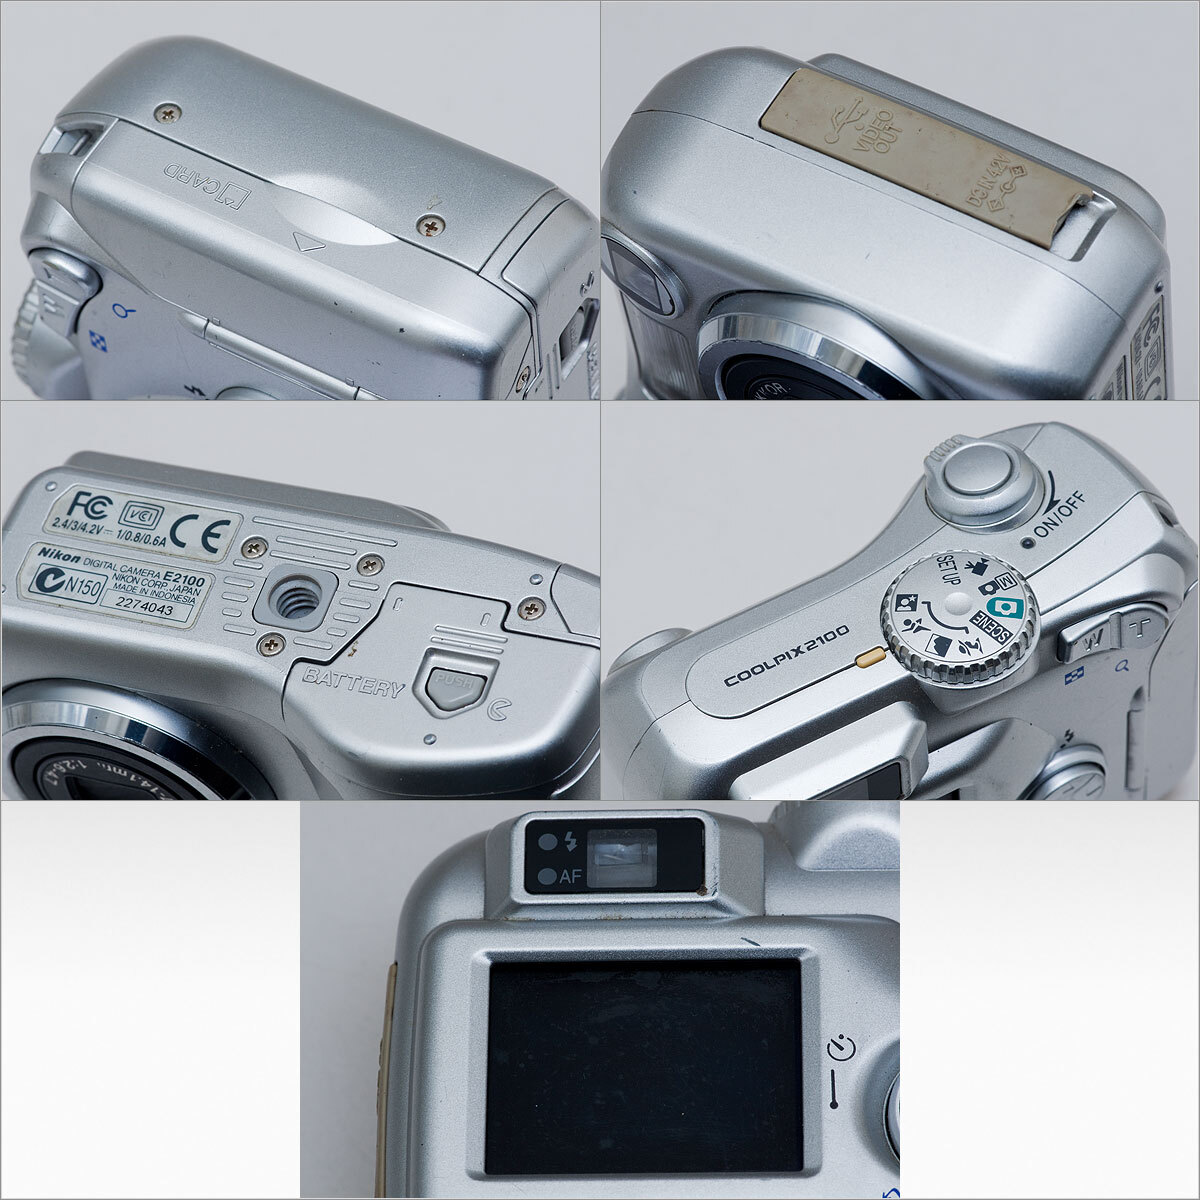 故障破損ジャンクコンパクトデジカメ3台 Nikon COOLPIX 2100/4100/775 まとめて [0409]の画像5